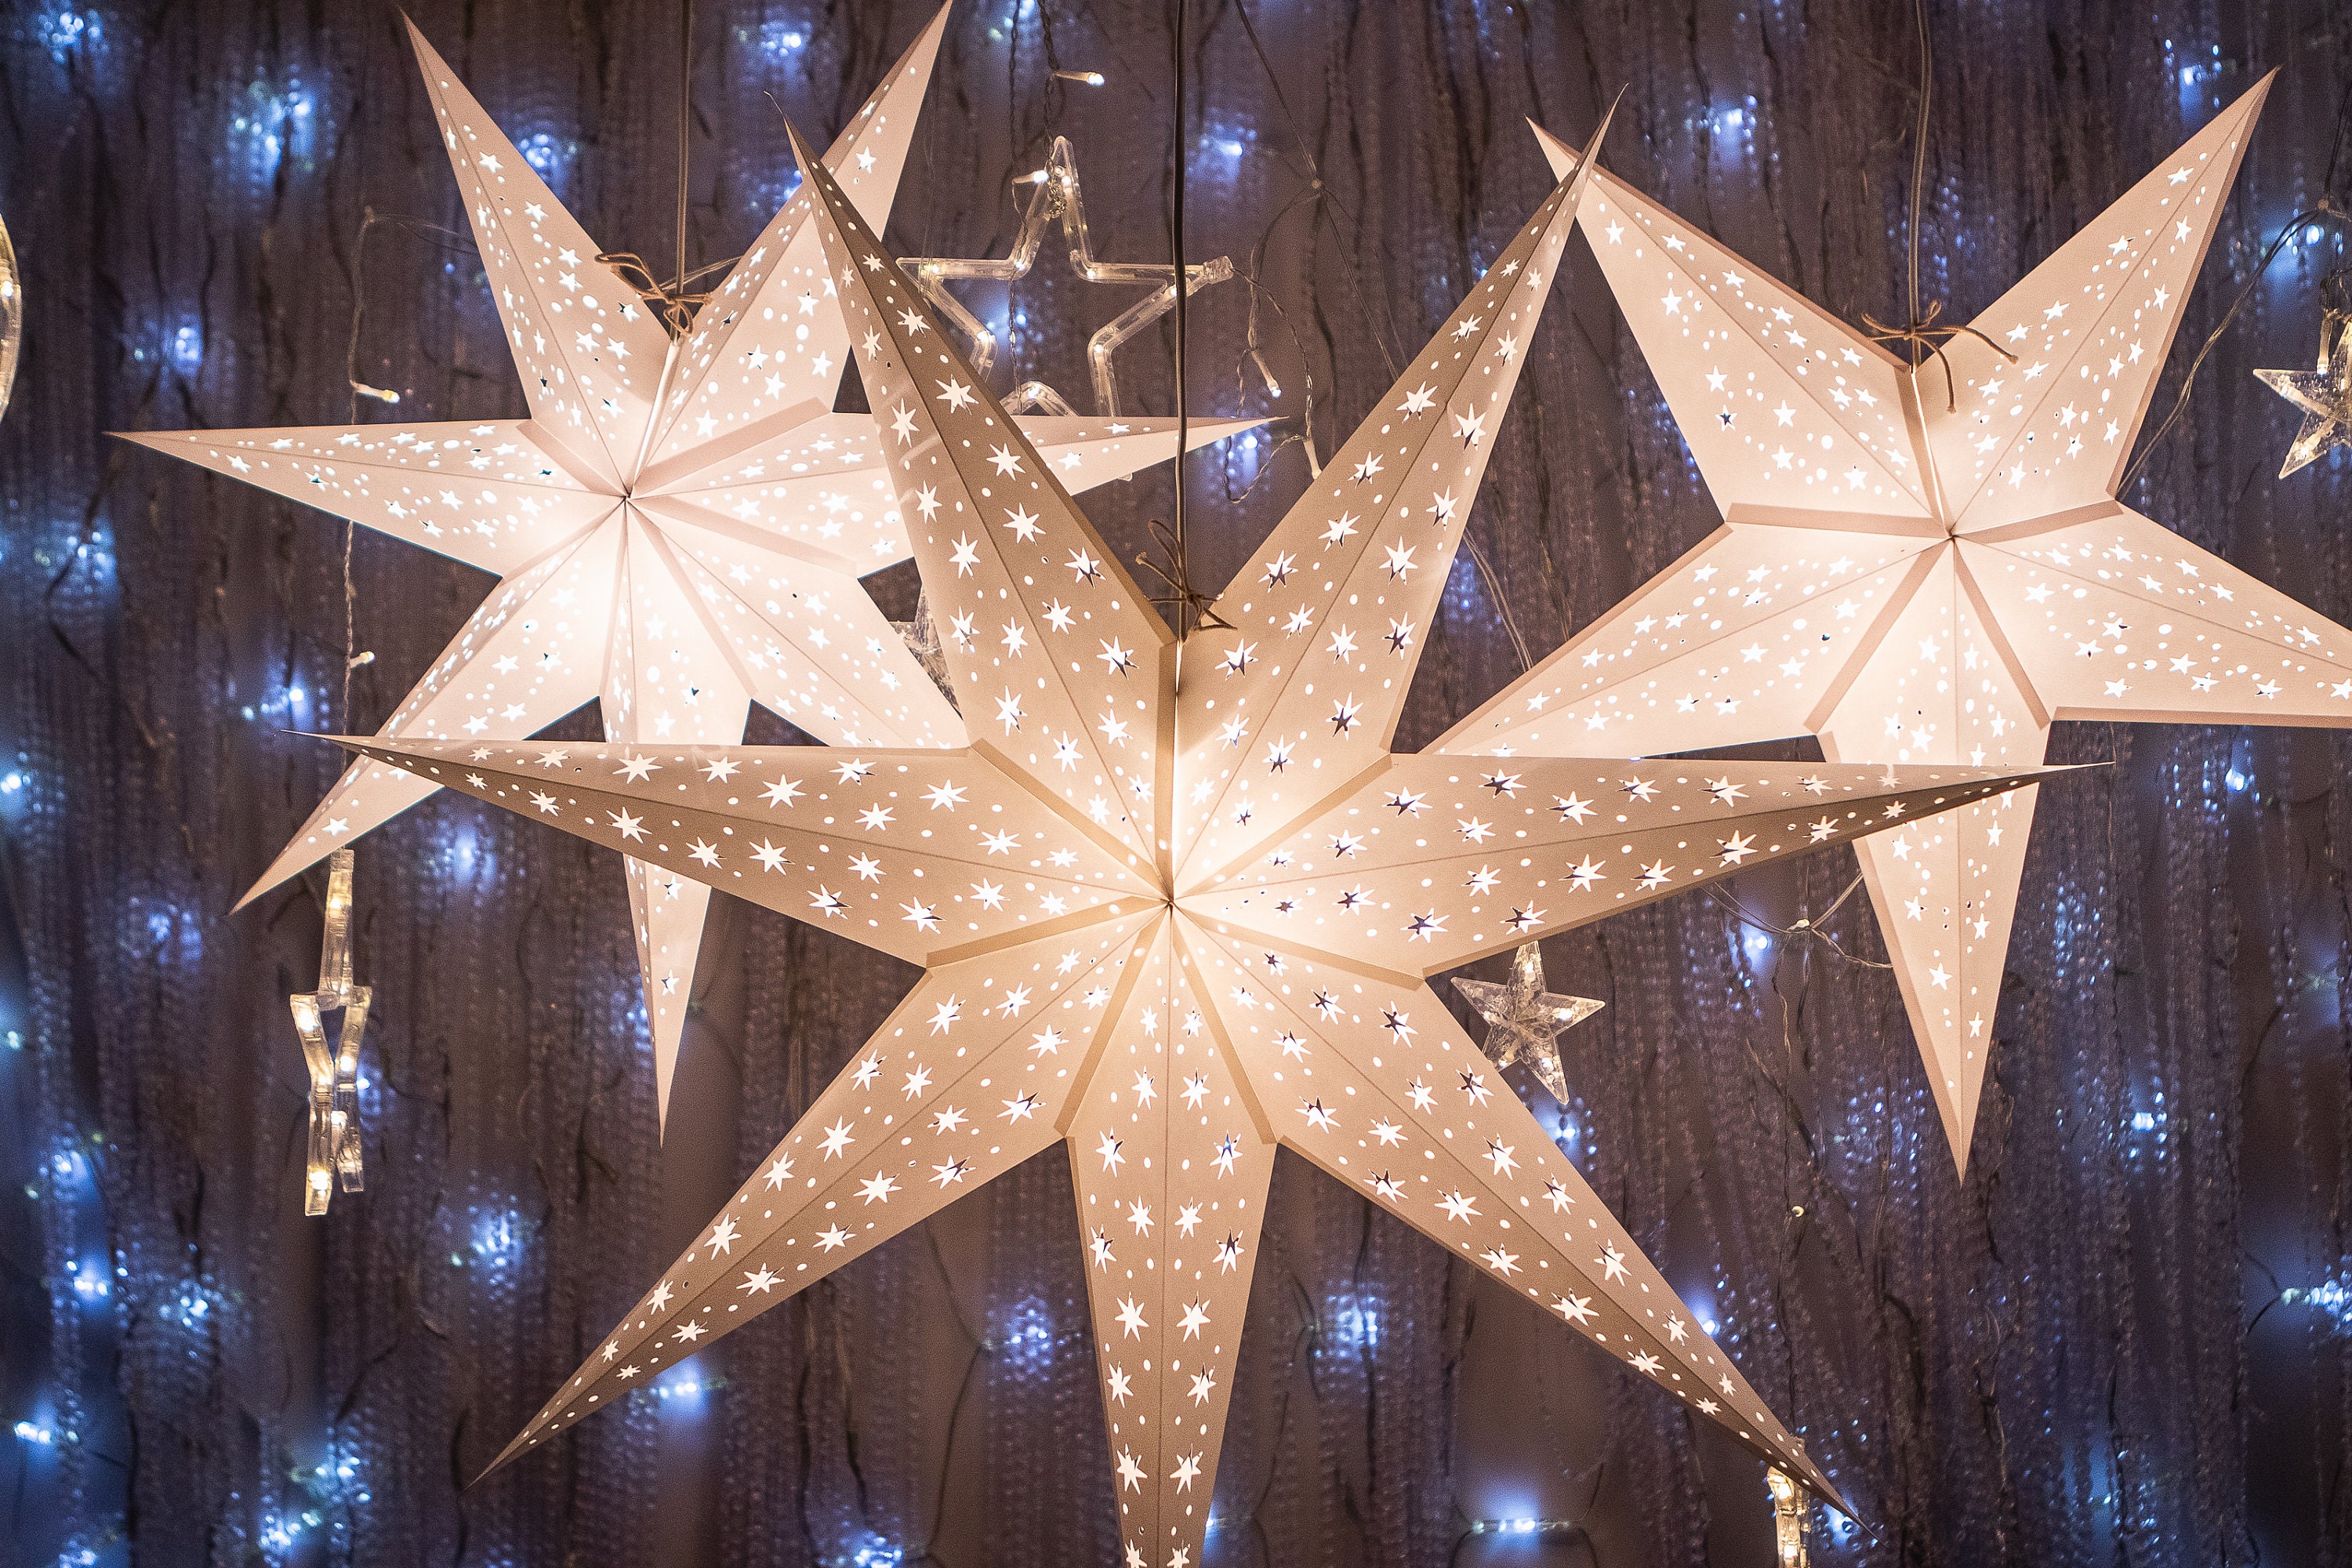 Genoplive jernbane Afbrydelse White Paper Star Lanterns Set of 3 Christmas Star Lights - Etsy